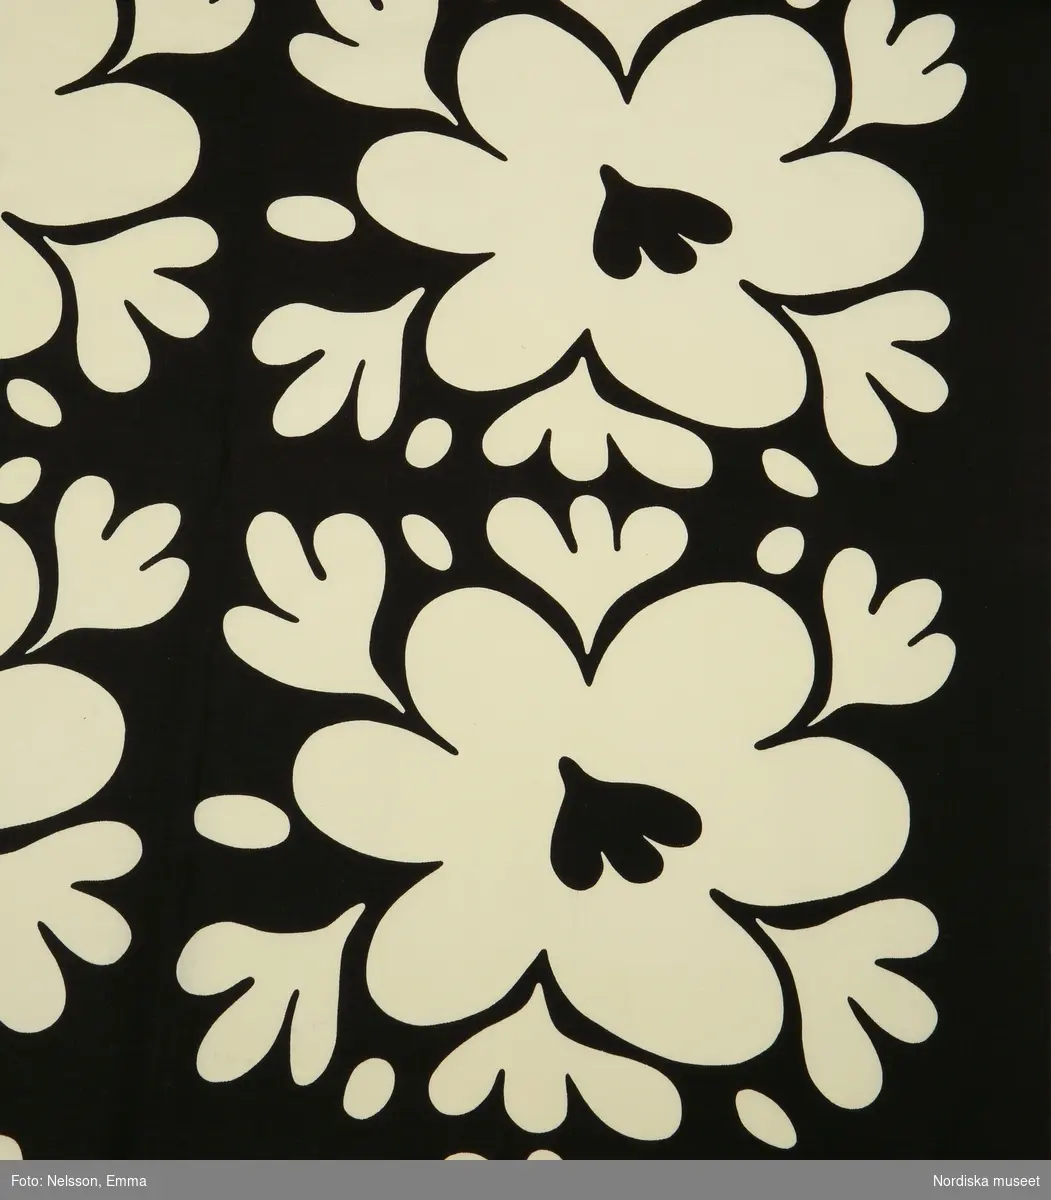 Katalogkort:
"Bomullsrips mes tryckt mönster i vitt och svart "Vallmon" komp. av Birgitta Hahn, påklistrad etikett med nr, 505370/10."